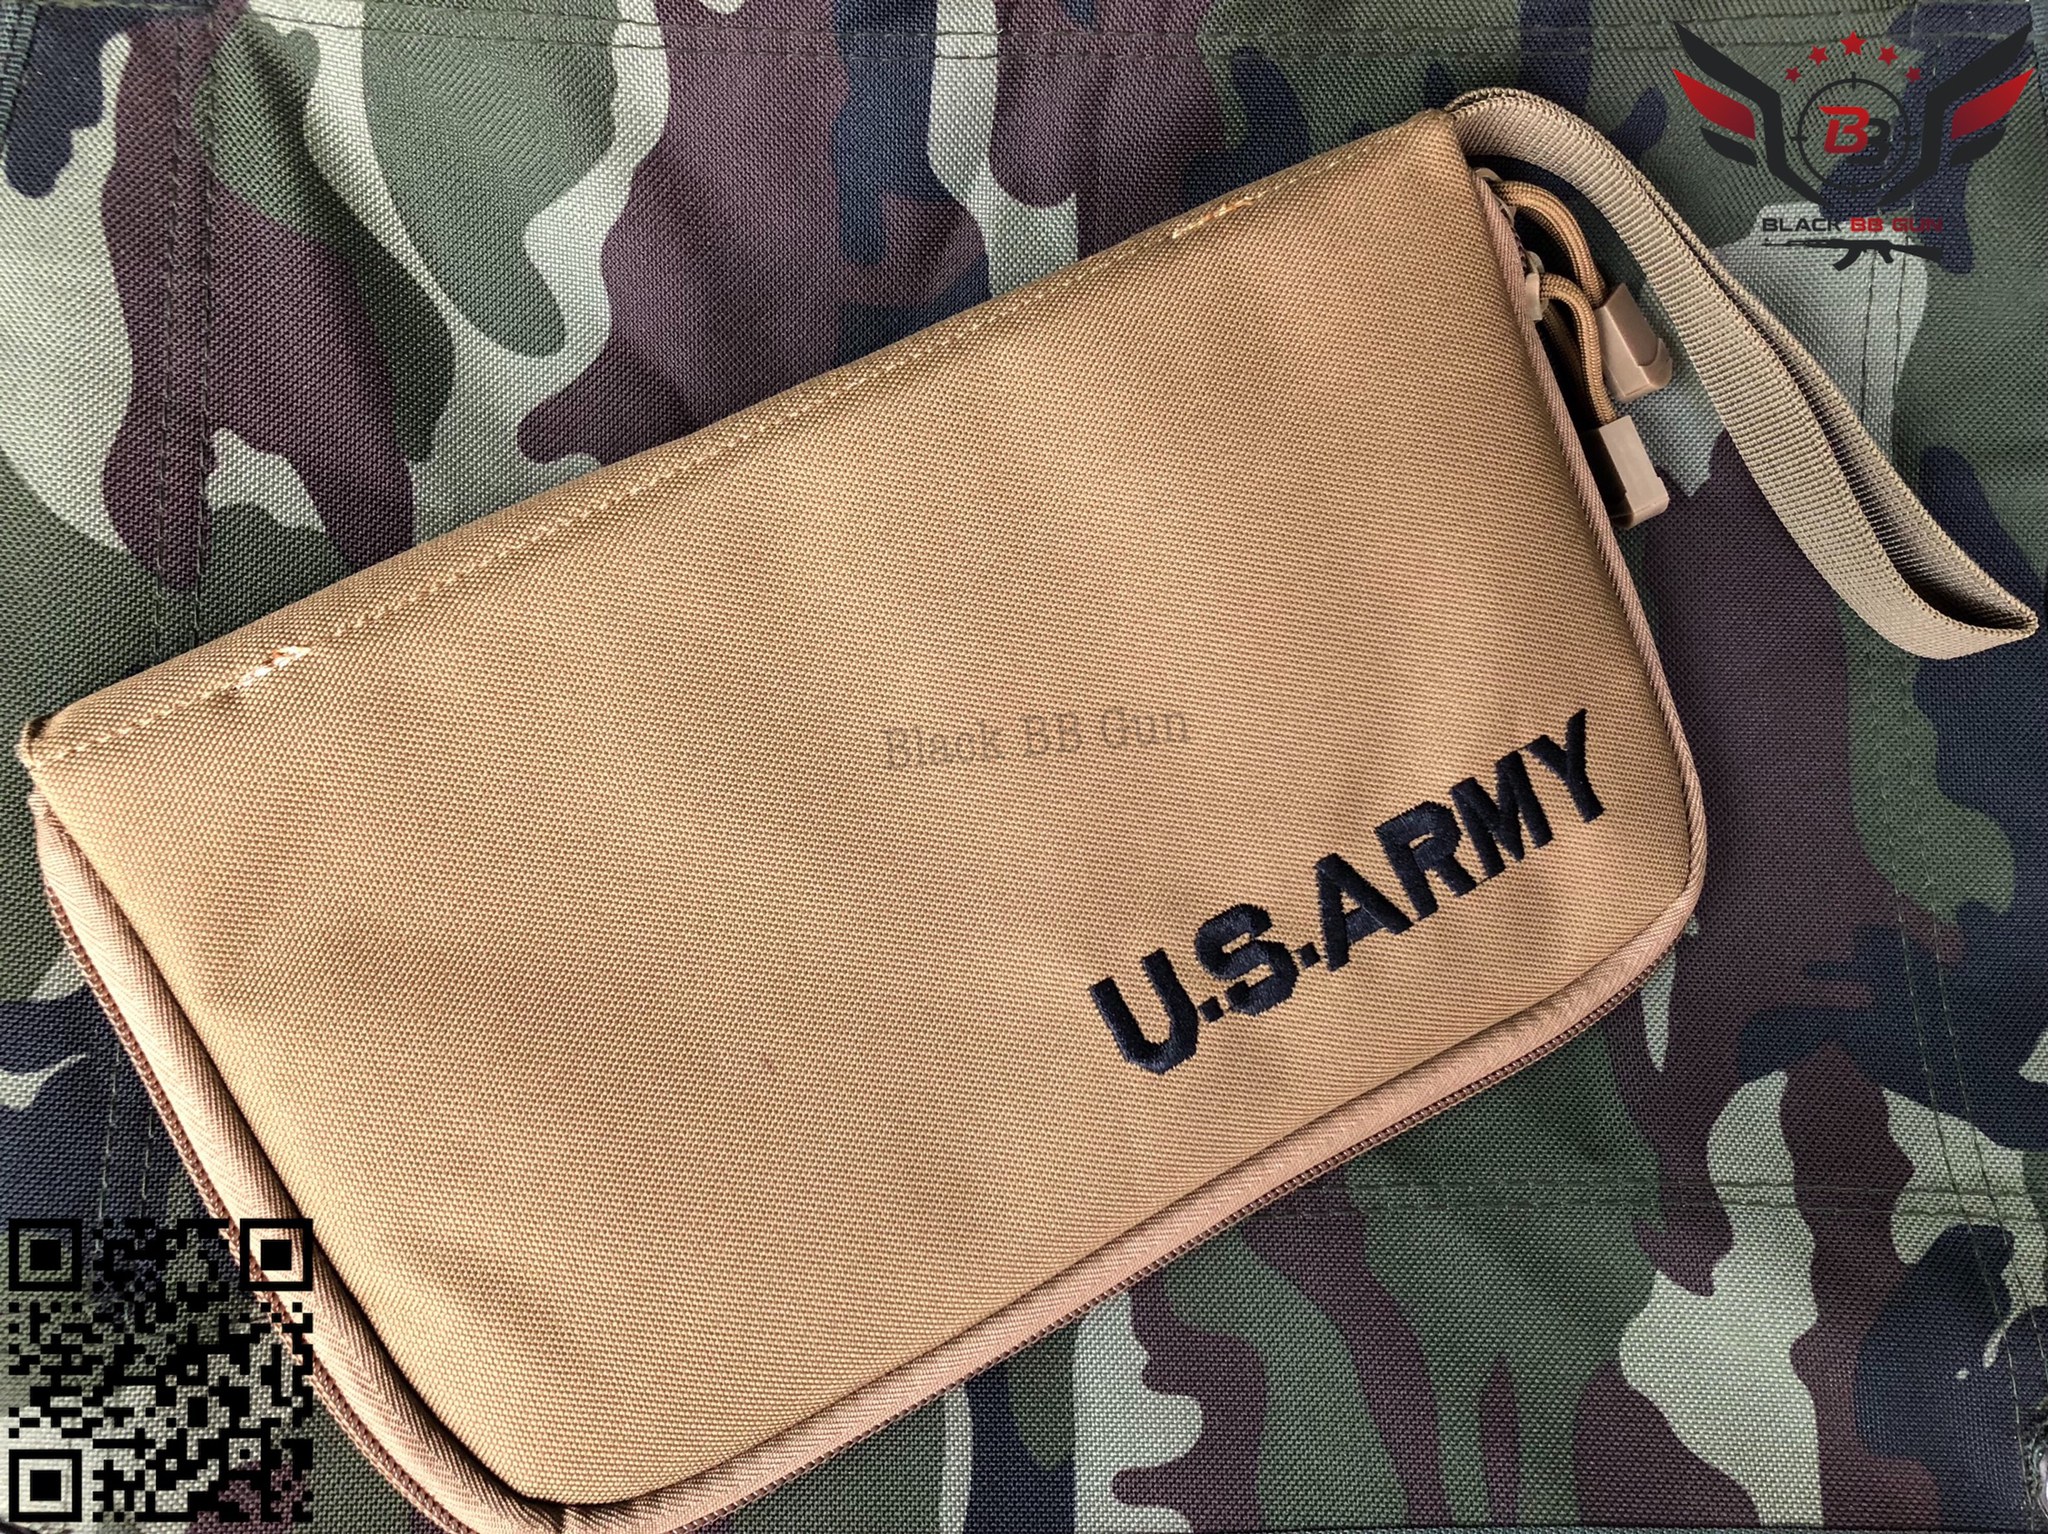 กระเป๋าผ้าใส่ปืนสั้น U.S. Army   มี5สีให้เลือก  #สีดำ #สีทราย #สีเขียว  #สีมัลติแคม #สีACU  ราคา 250 บาท